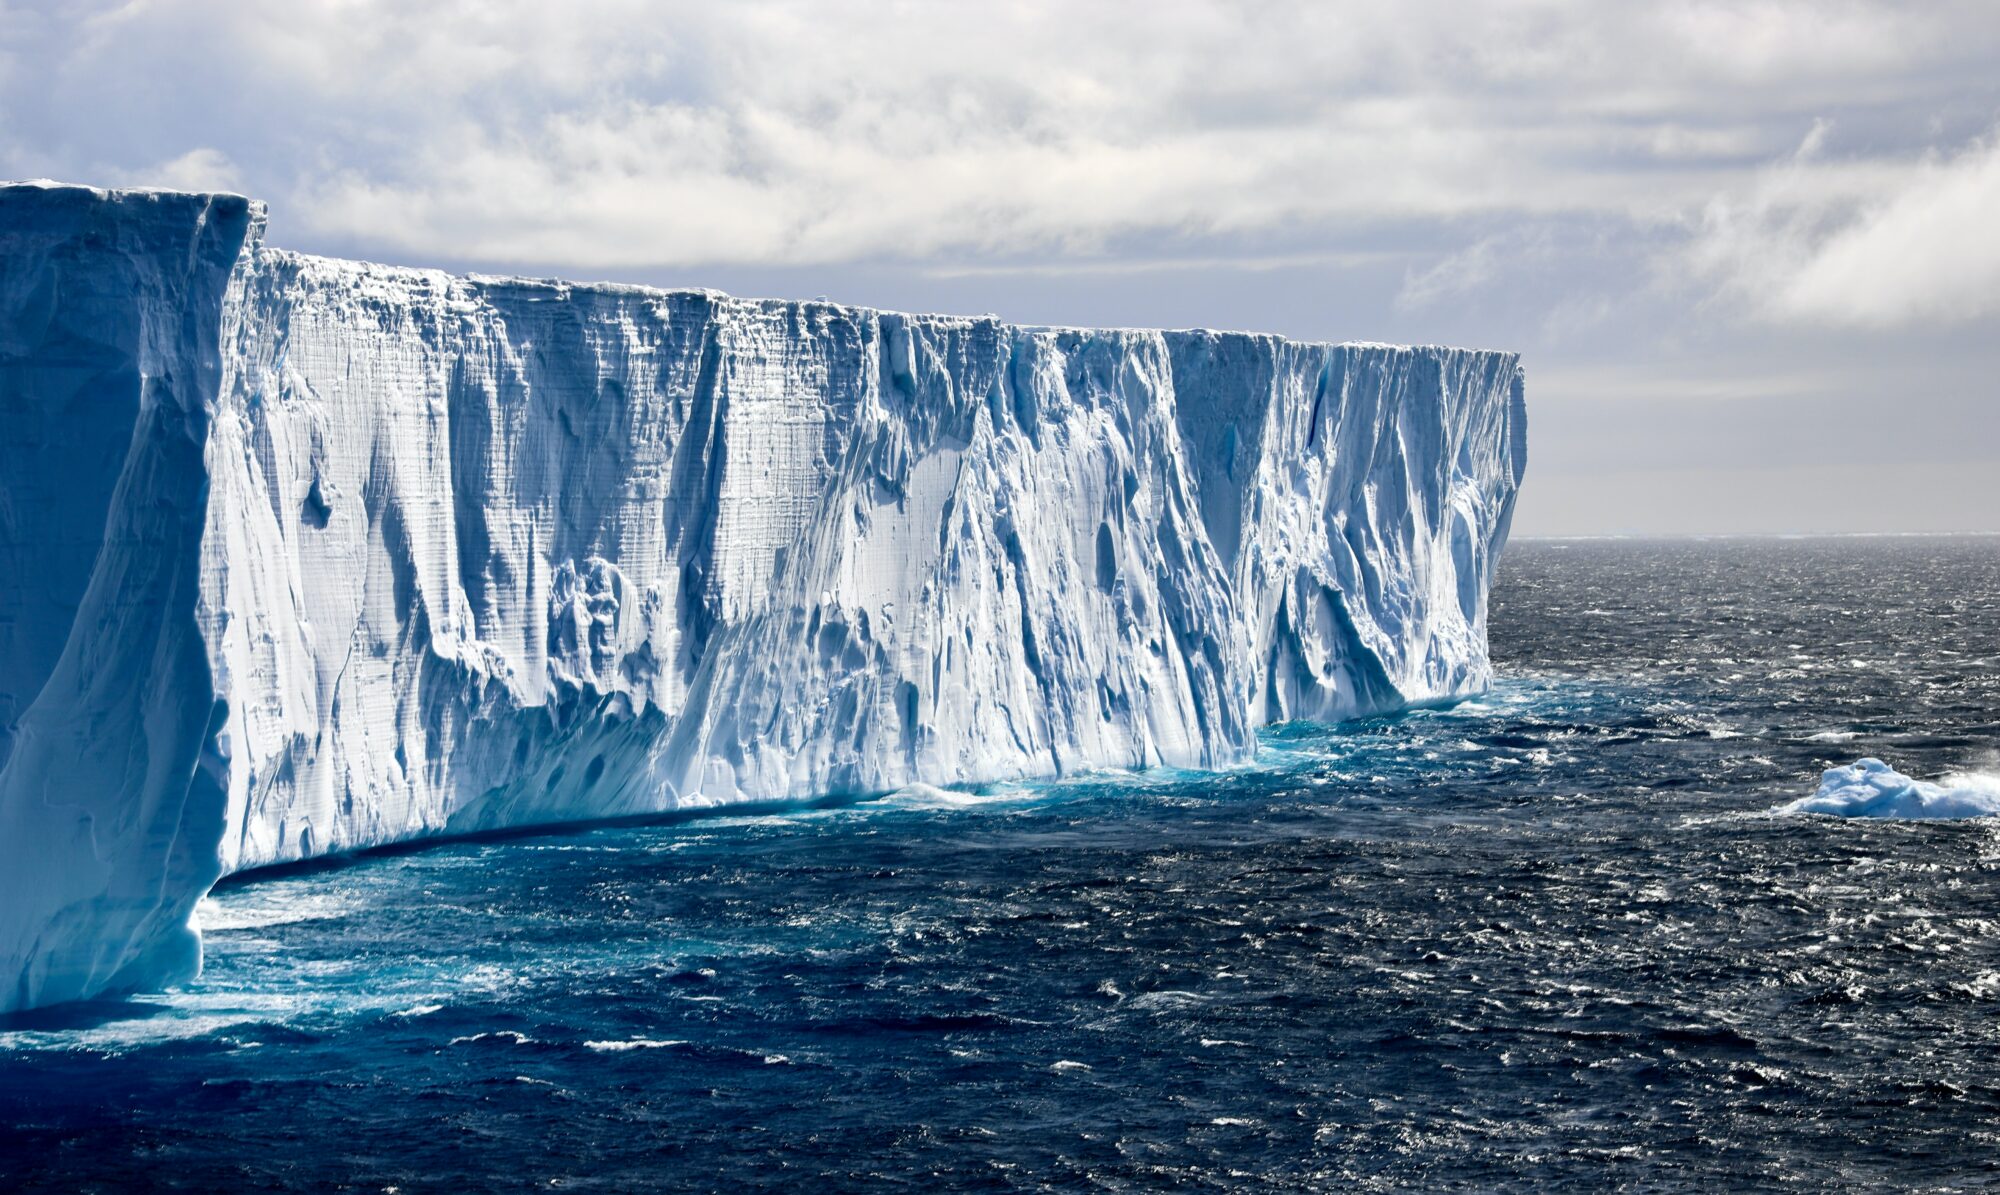 Isblokk i Weddellhavet